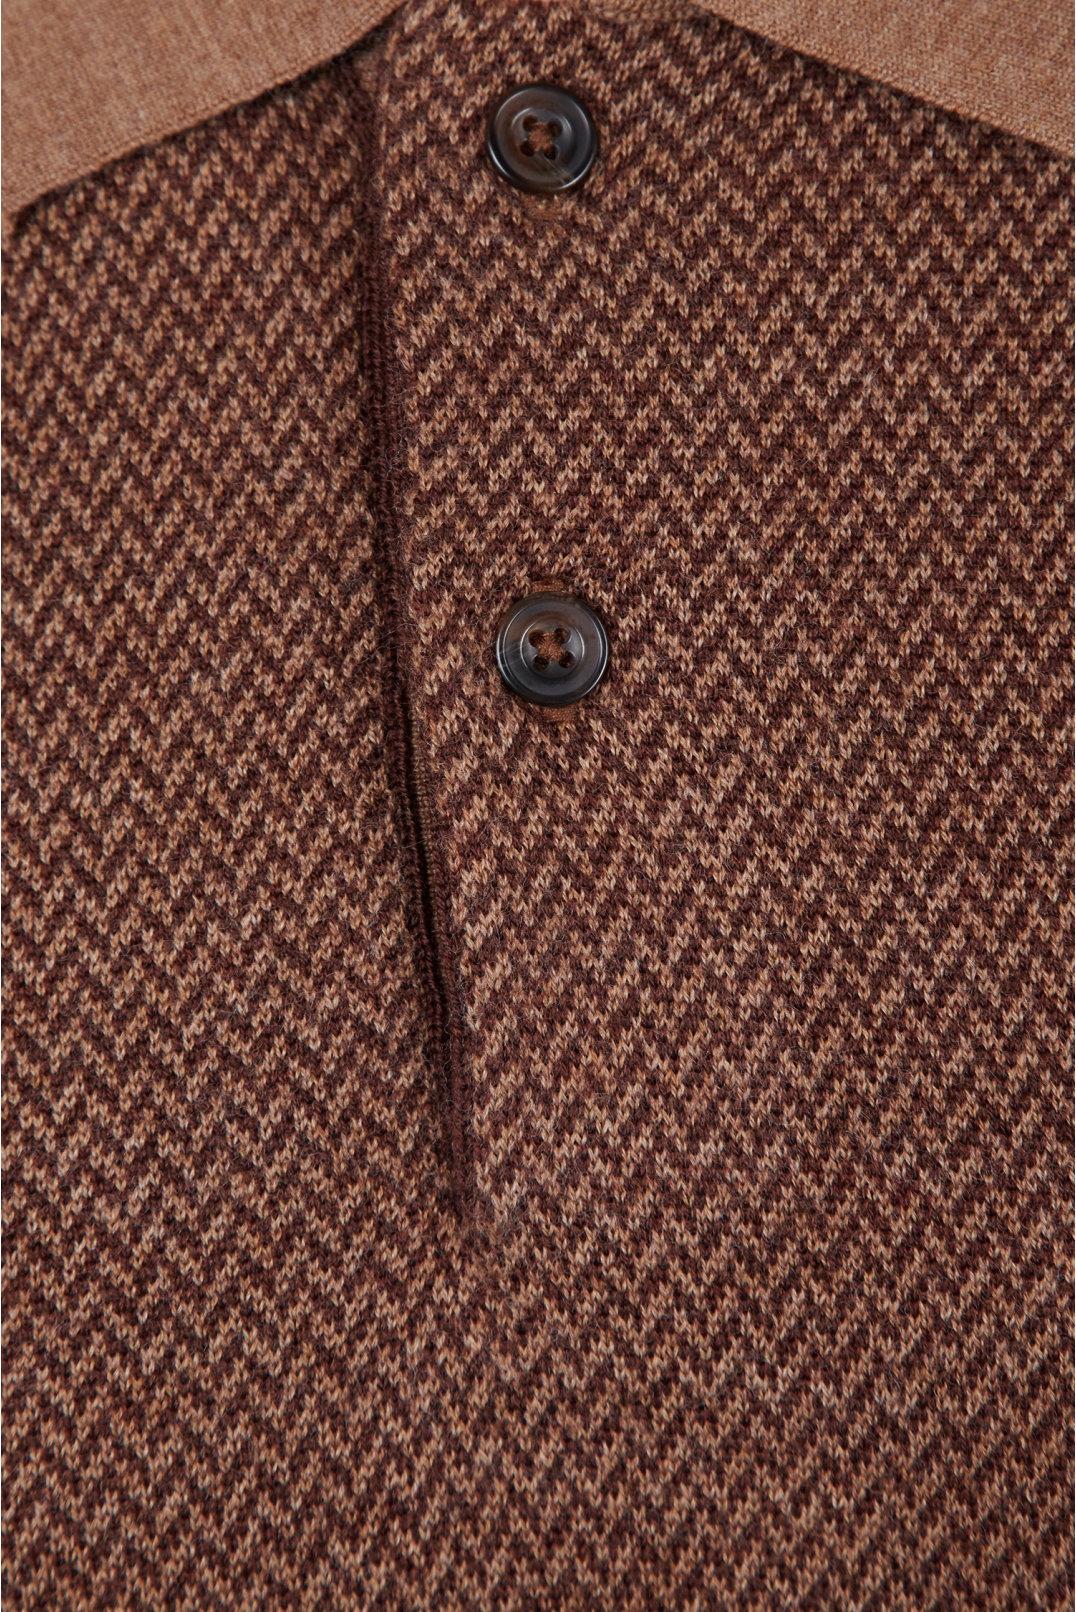 Мужское коричневое шерстяное поло с узором - 3